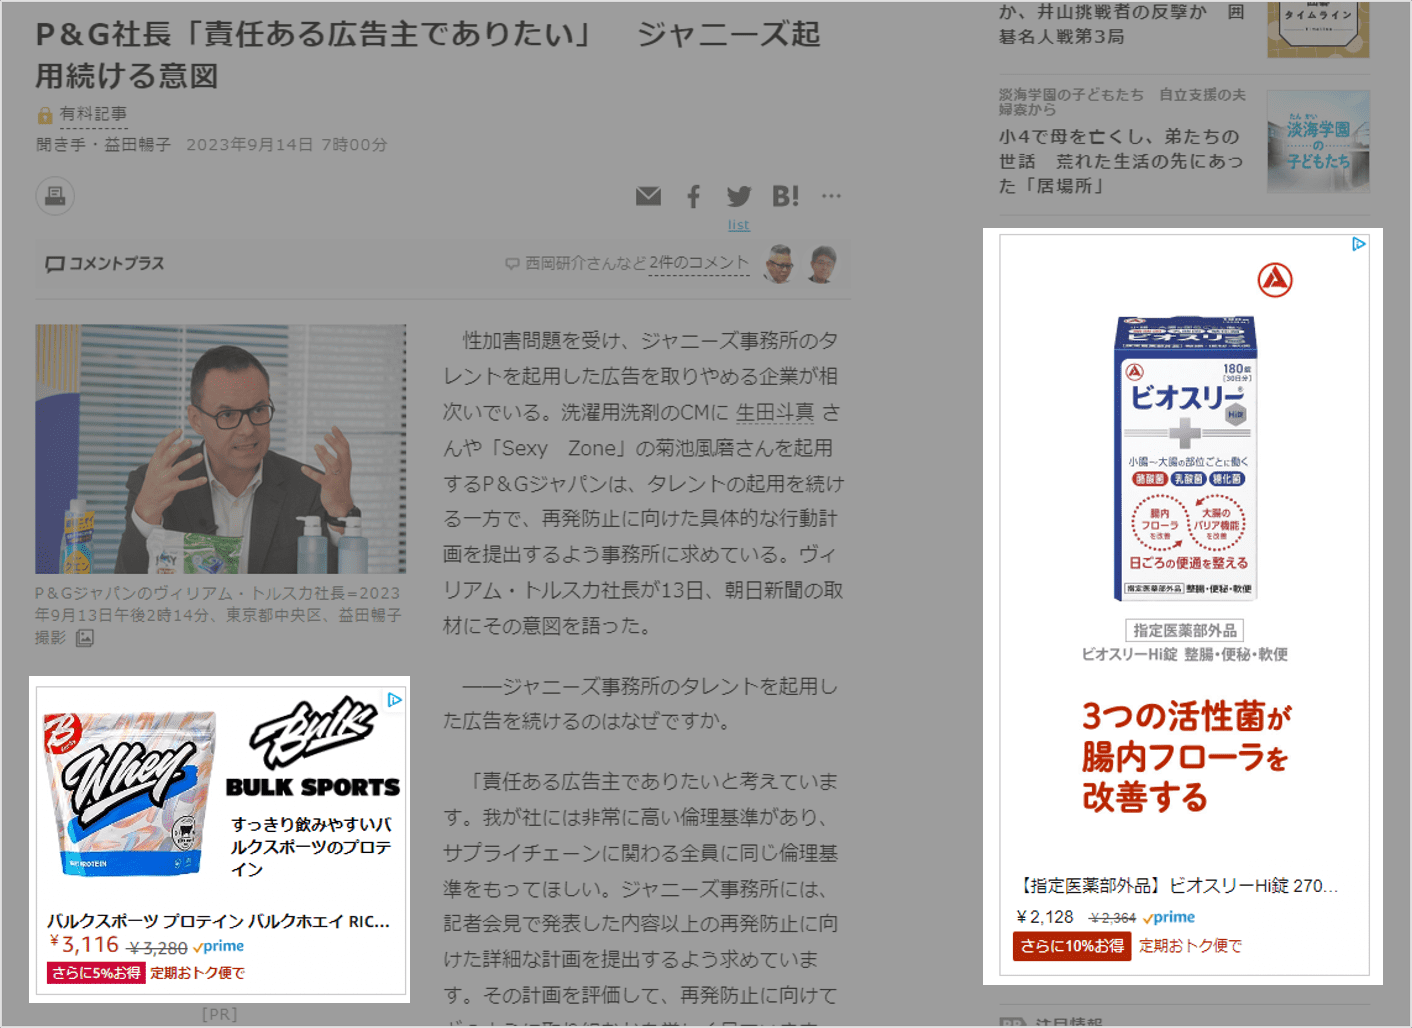 朝日新聞デジタルに掲載されていバナー広告